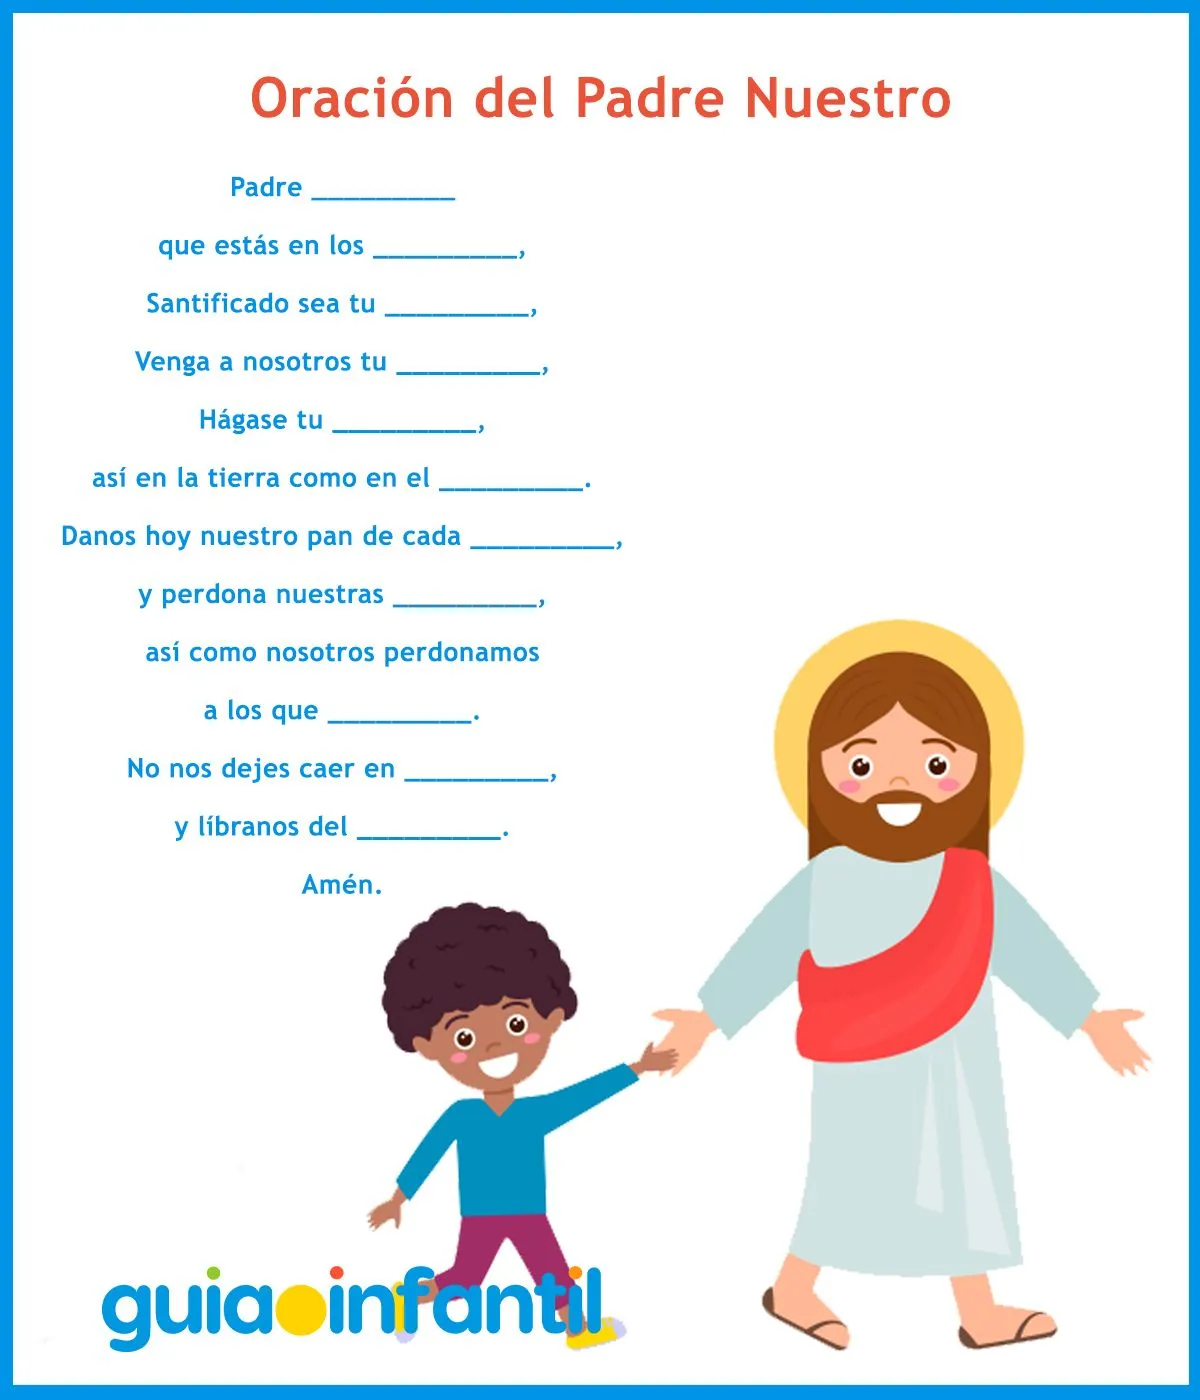 Cuento corto para niños sobre el Padre Nuestro - Oraciones básicas